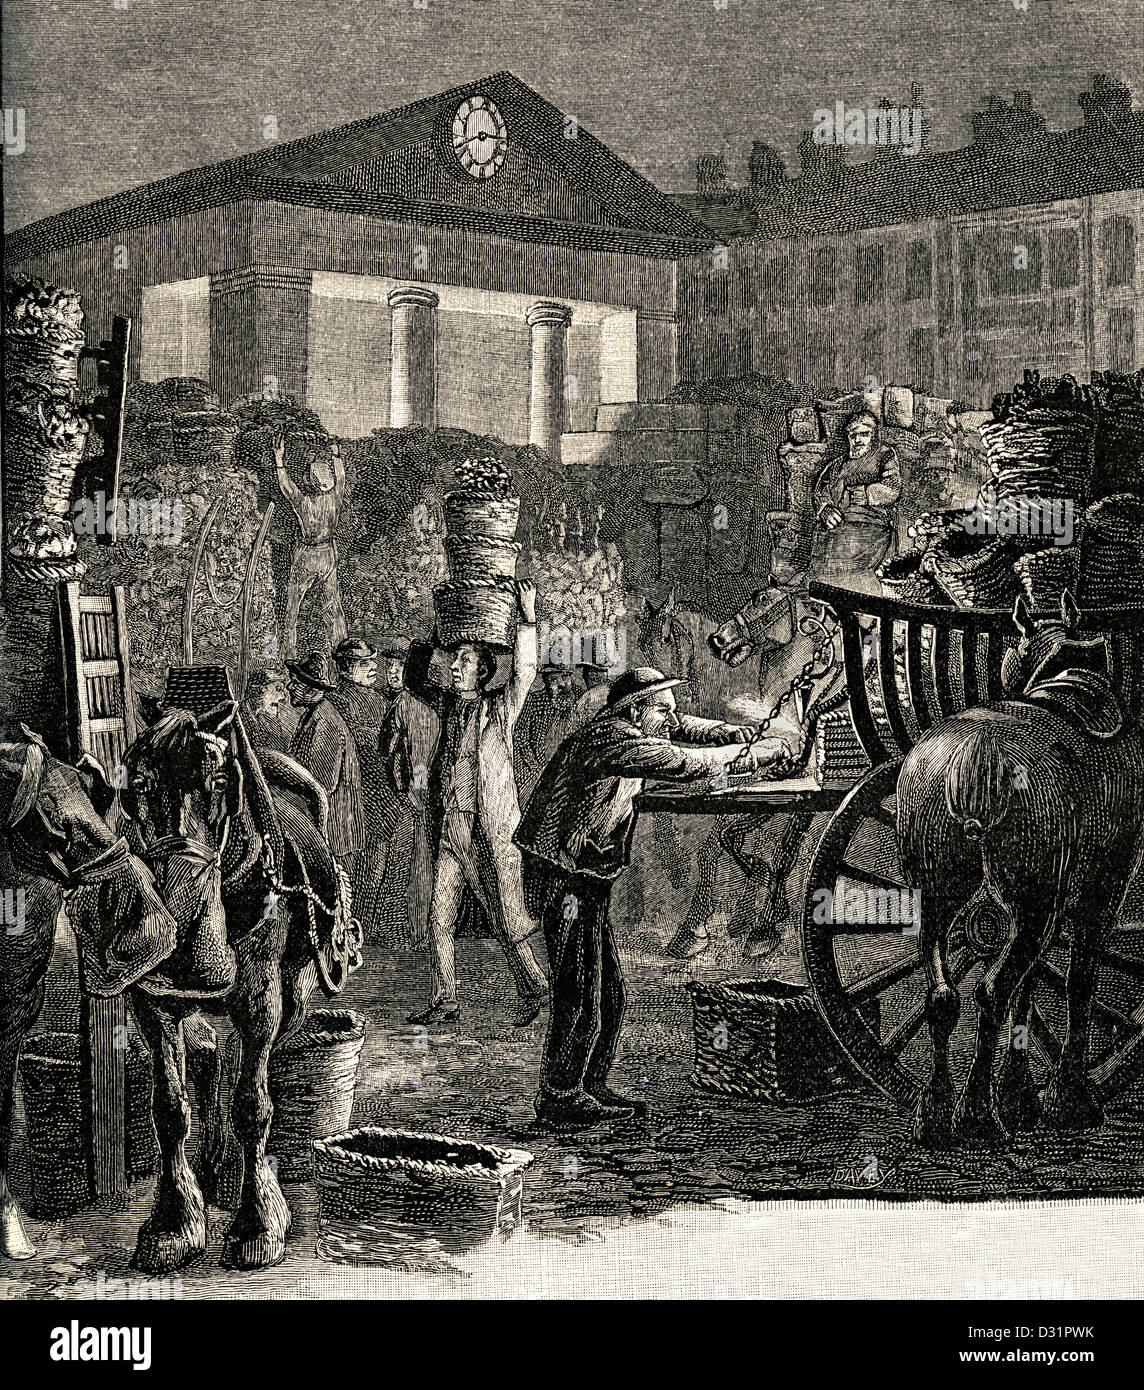 Gravure historiques en noir et blanc illustration de Covent Garden market de nuit au début des années 1800 Banque D'Images